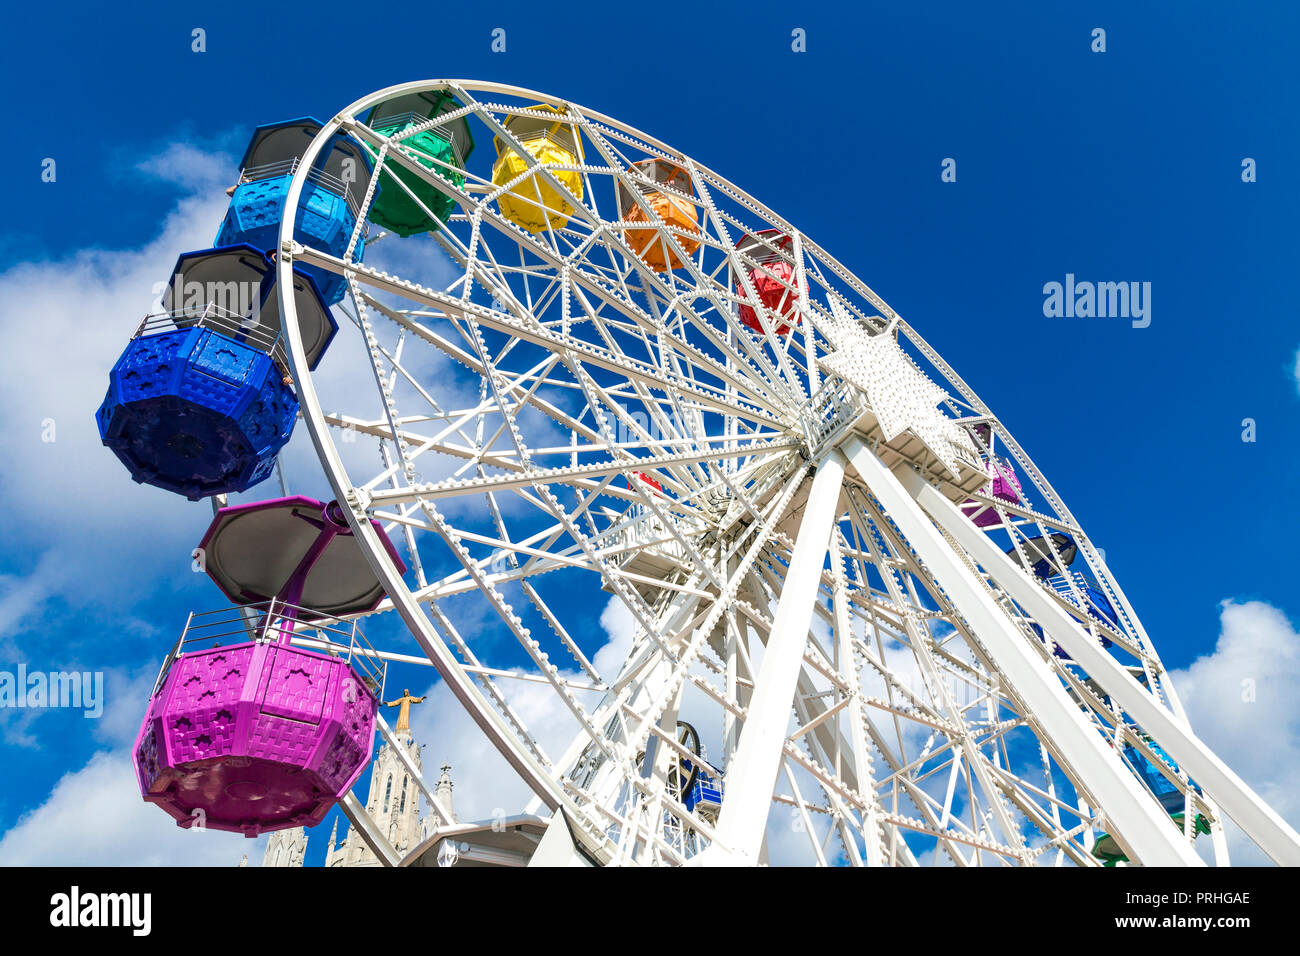 Grande roue colorée dans un parc d'attractions, Giradabo, Tibidabo, Barcelone, Espagne Banque D'Images